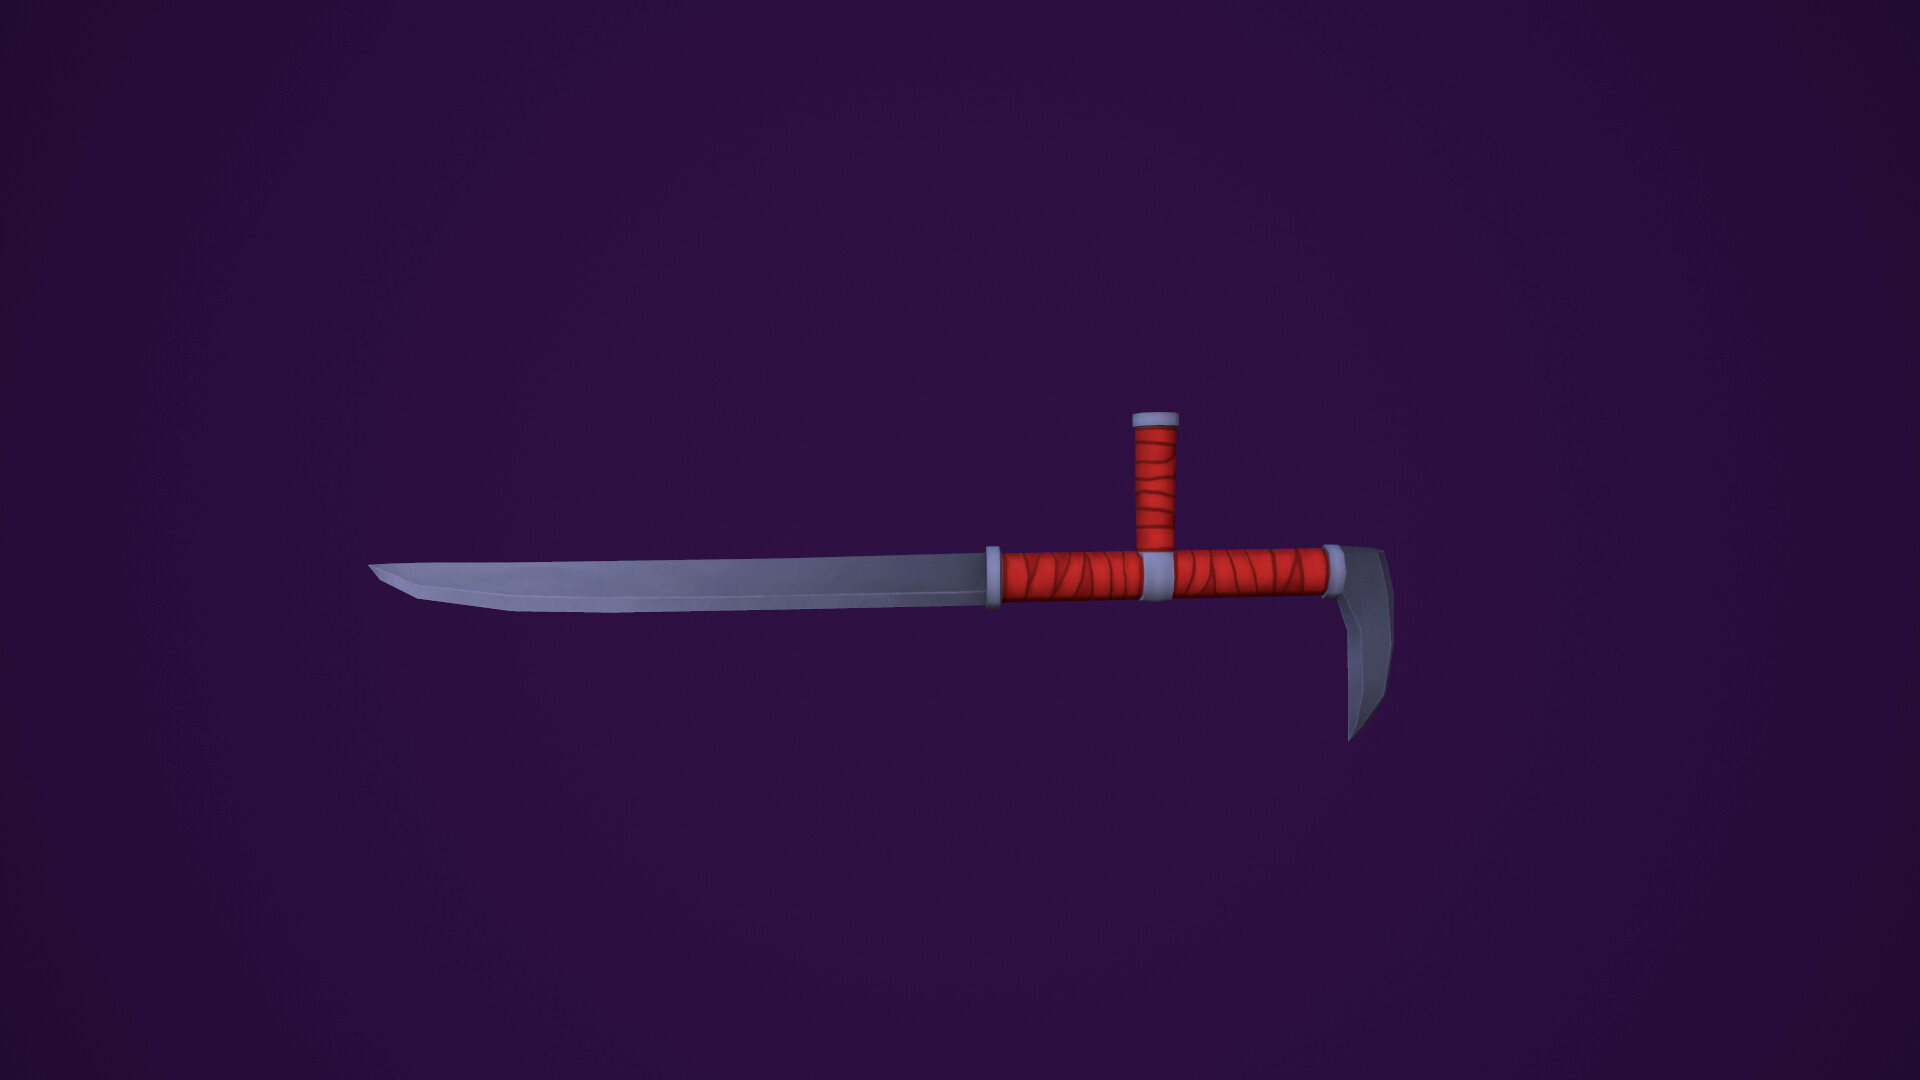 tonfa sword